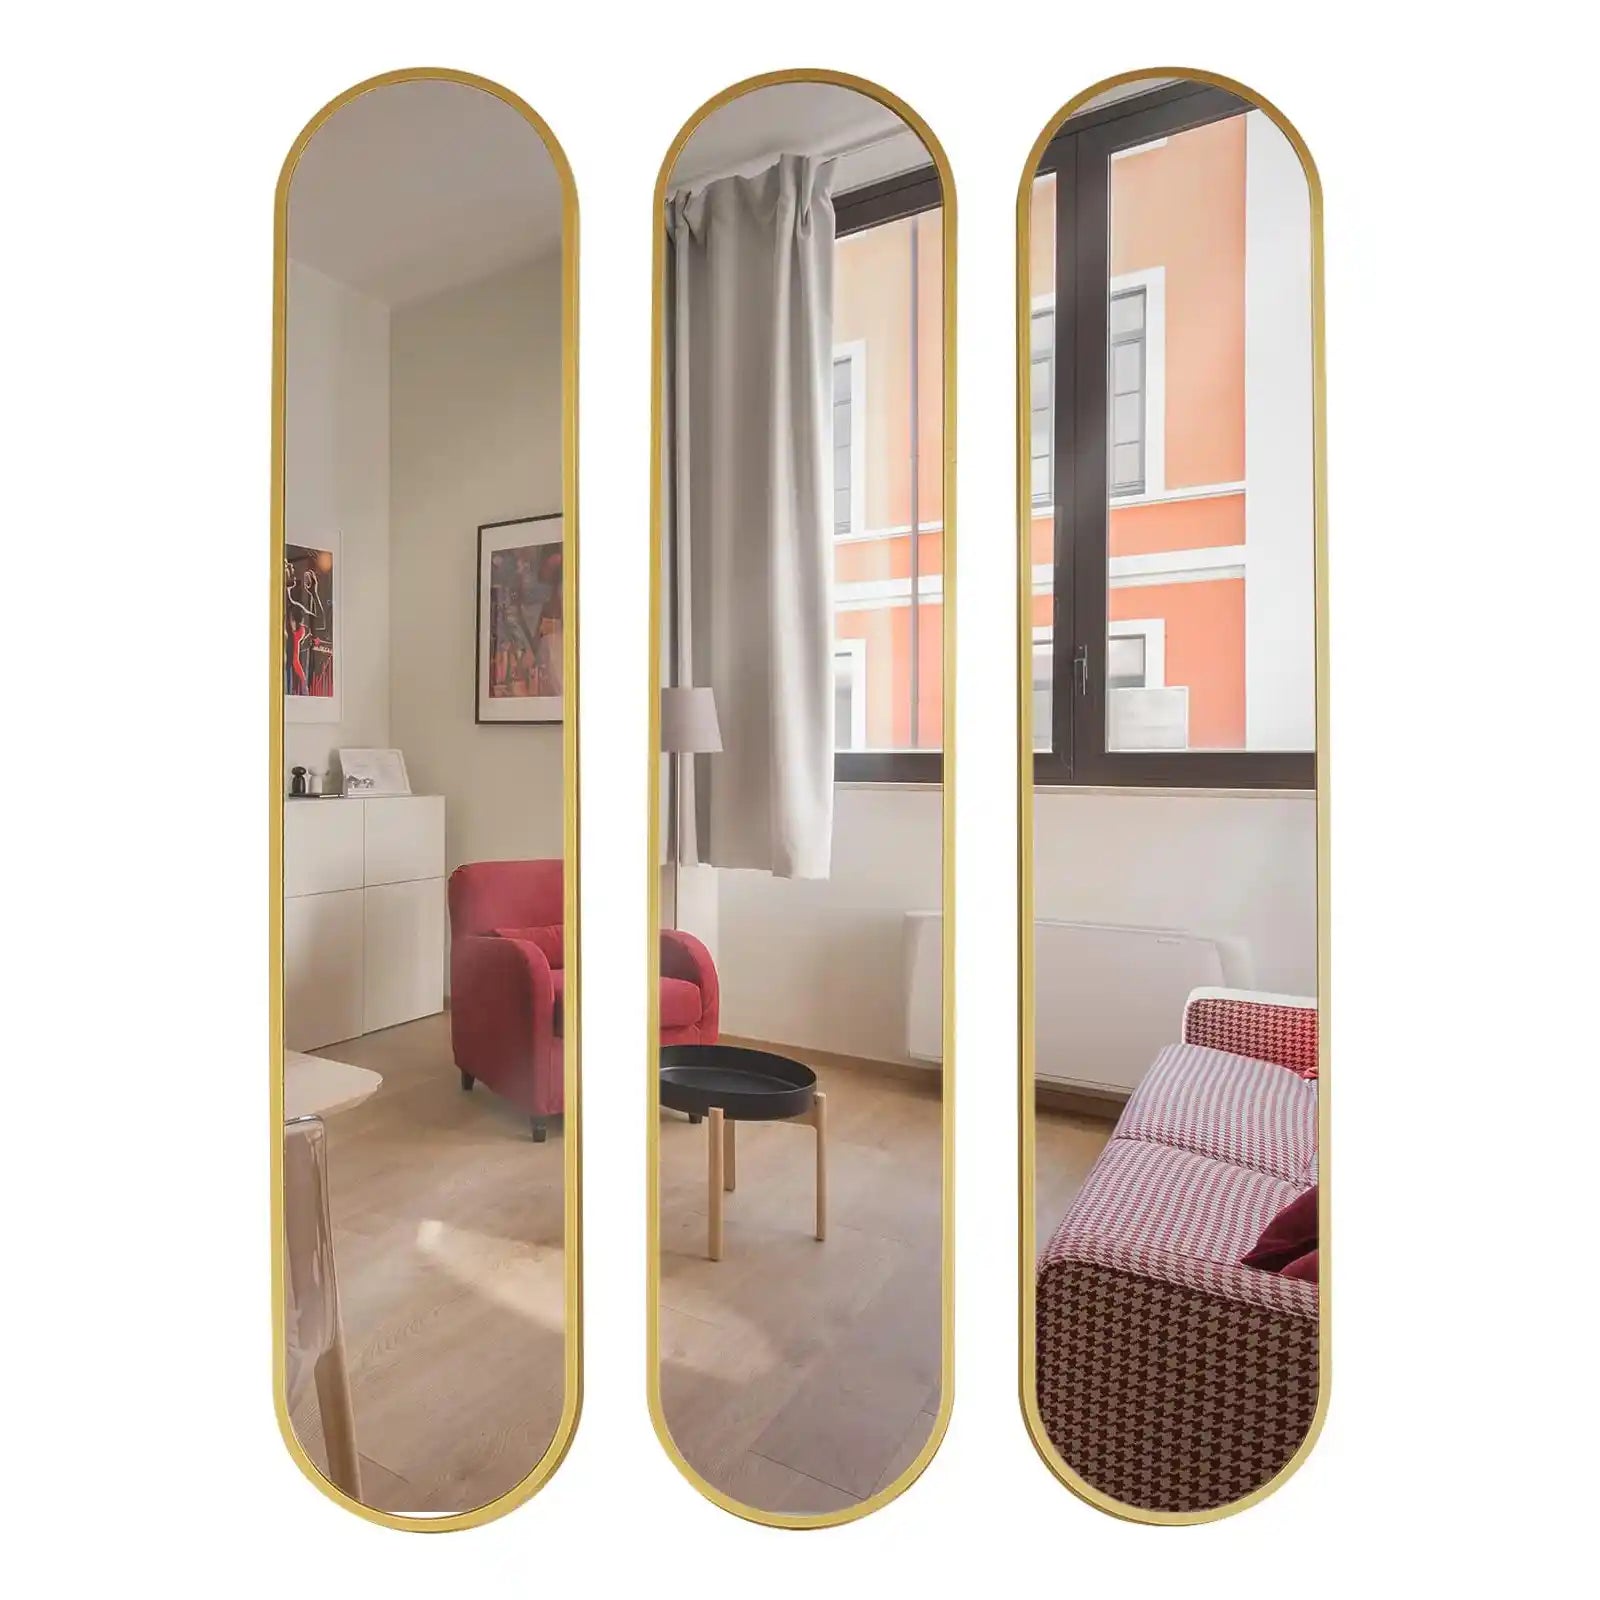 Juego de 3 espejos dorados ovalados decorativos, espejo de pared dorado moderno de 40 "x 8" para el hogar, el baño y la sala de estar